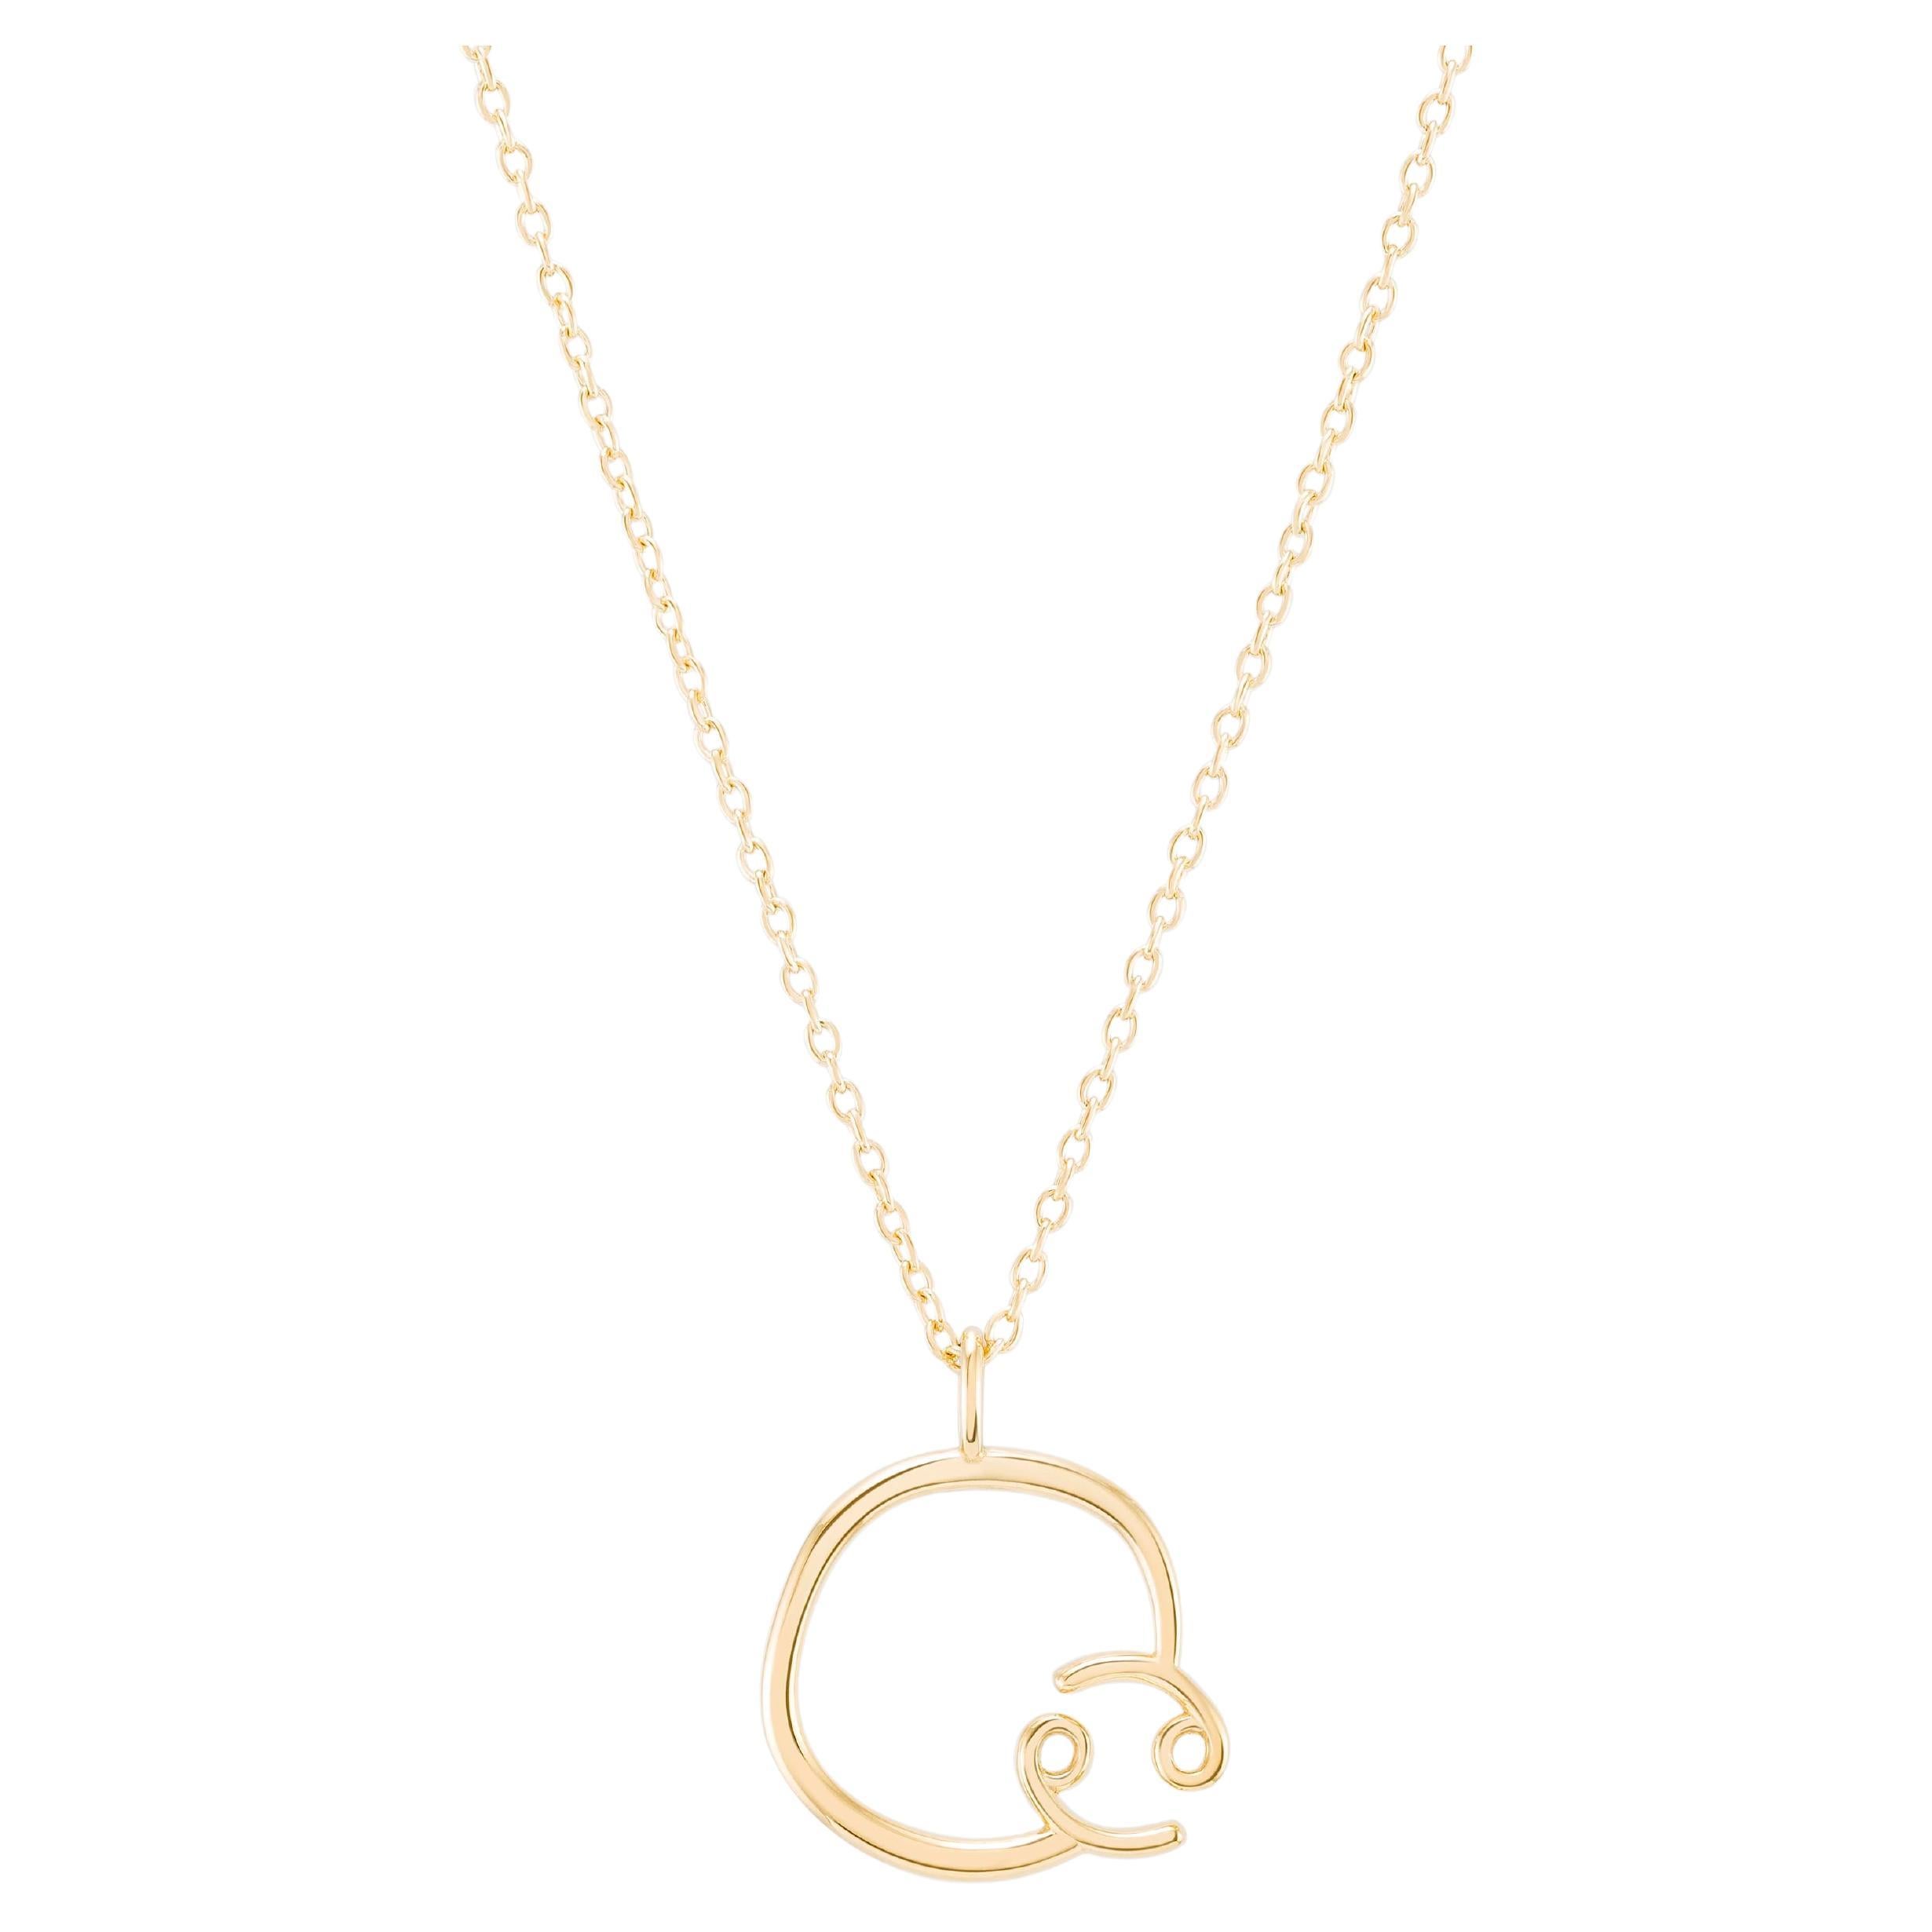 Zodiac Cancer 18k Gold Necklace